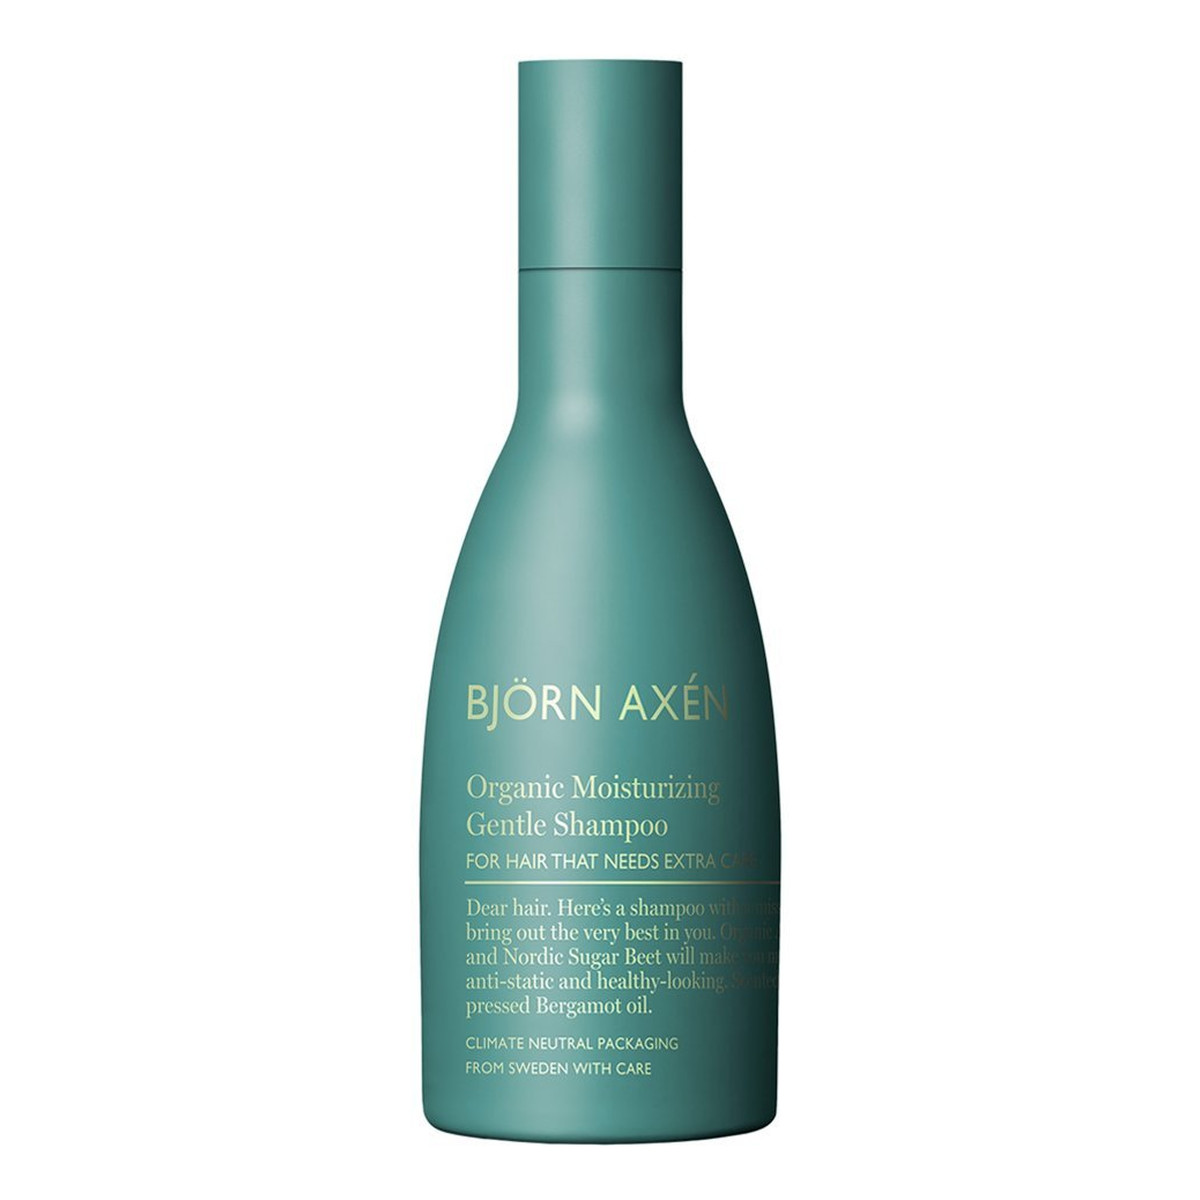 Björn Axén Organic Moisturizing Gentle Shampoo Delikatny szampon nawilżający do włosów 250ml